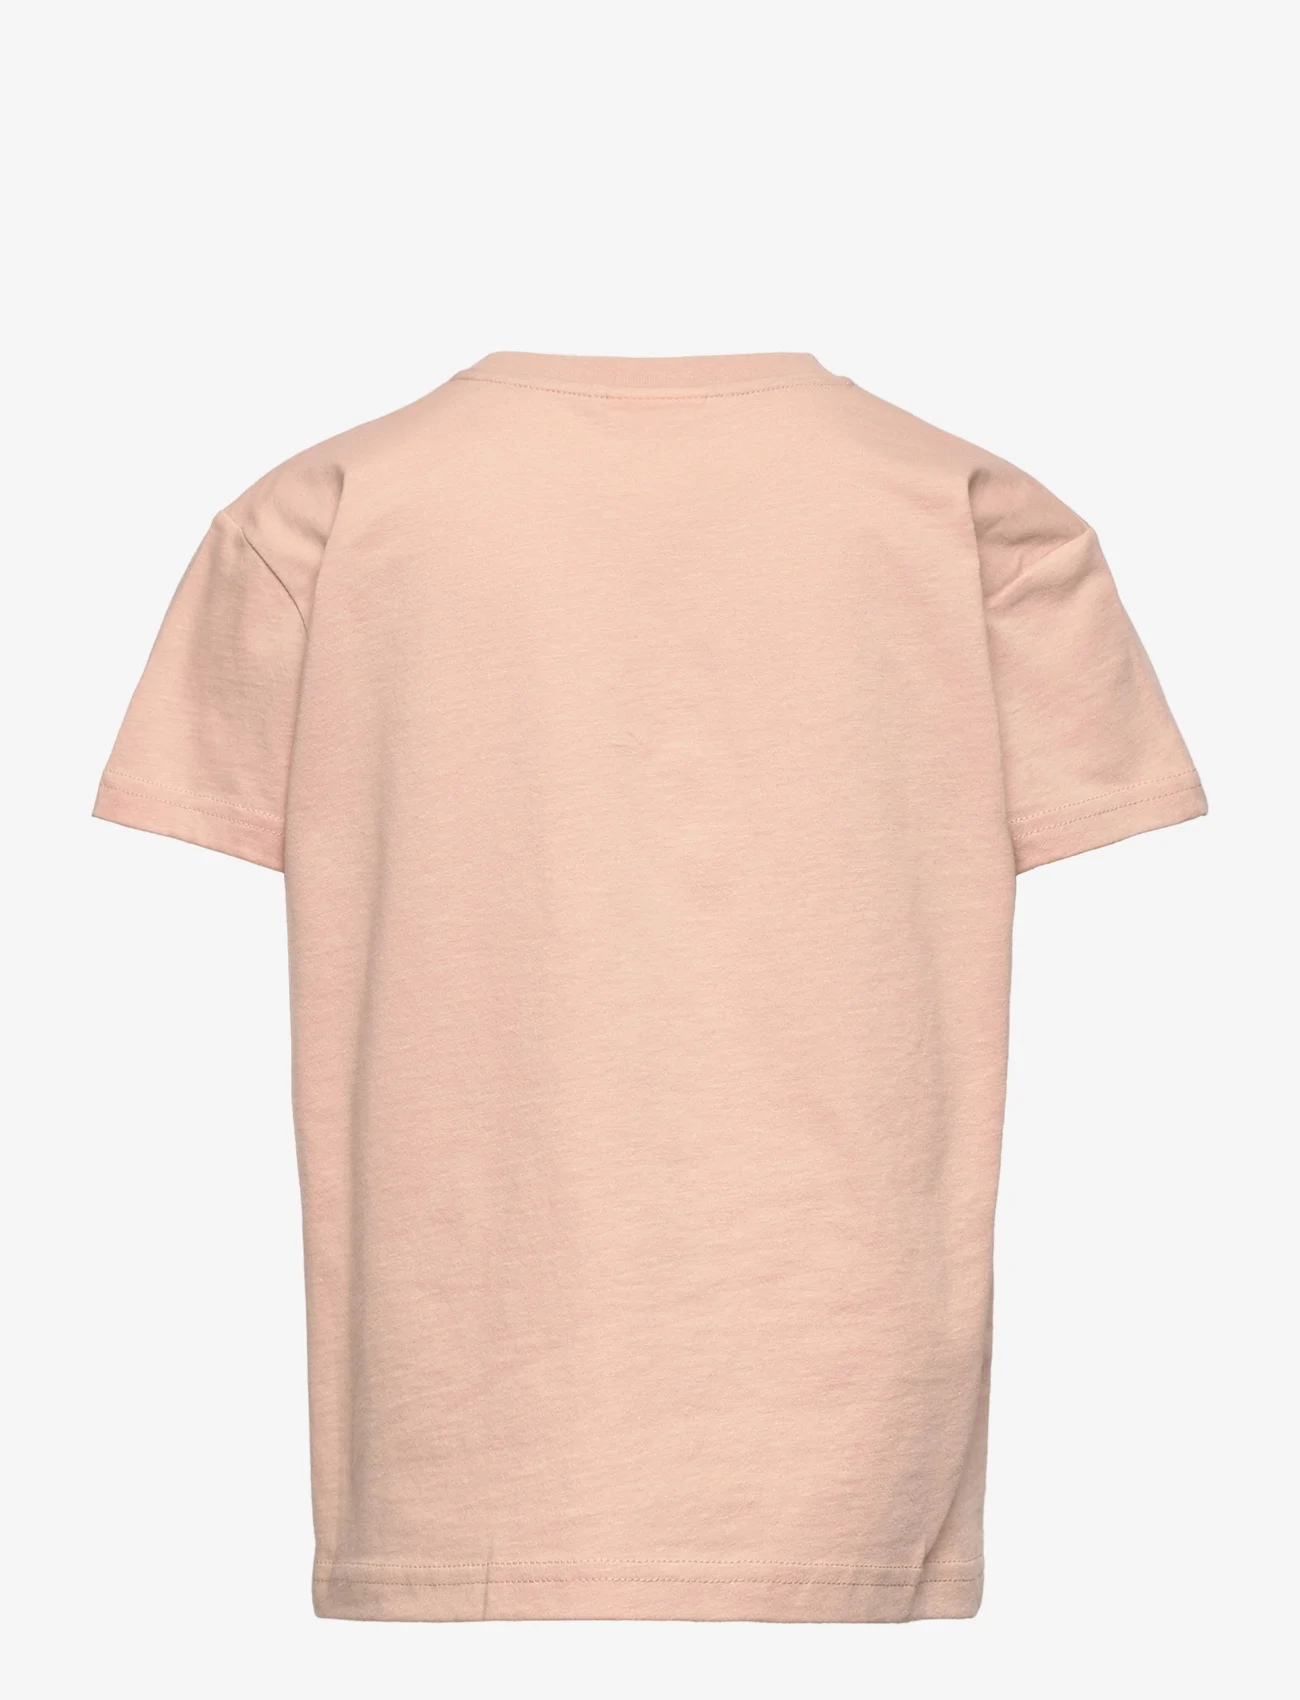 Sofie Schnoor Baby and Kids - T-shirt - kortärmade t-shirts - light rose - 1